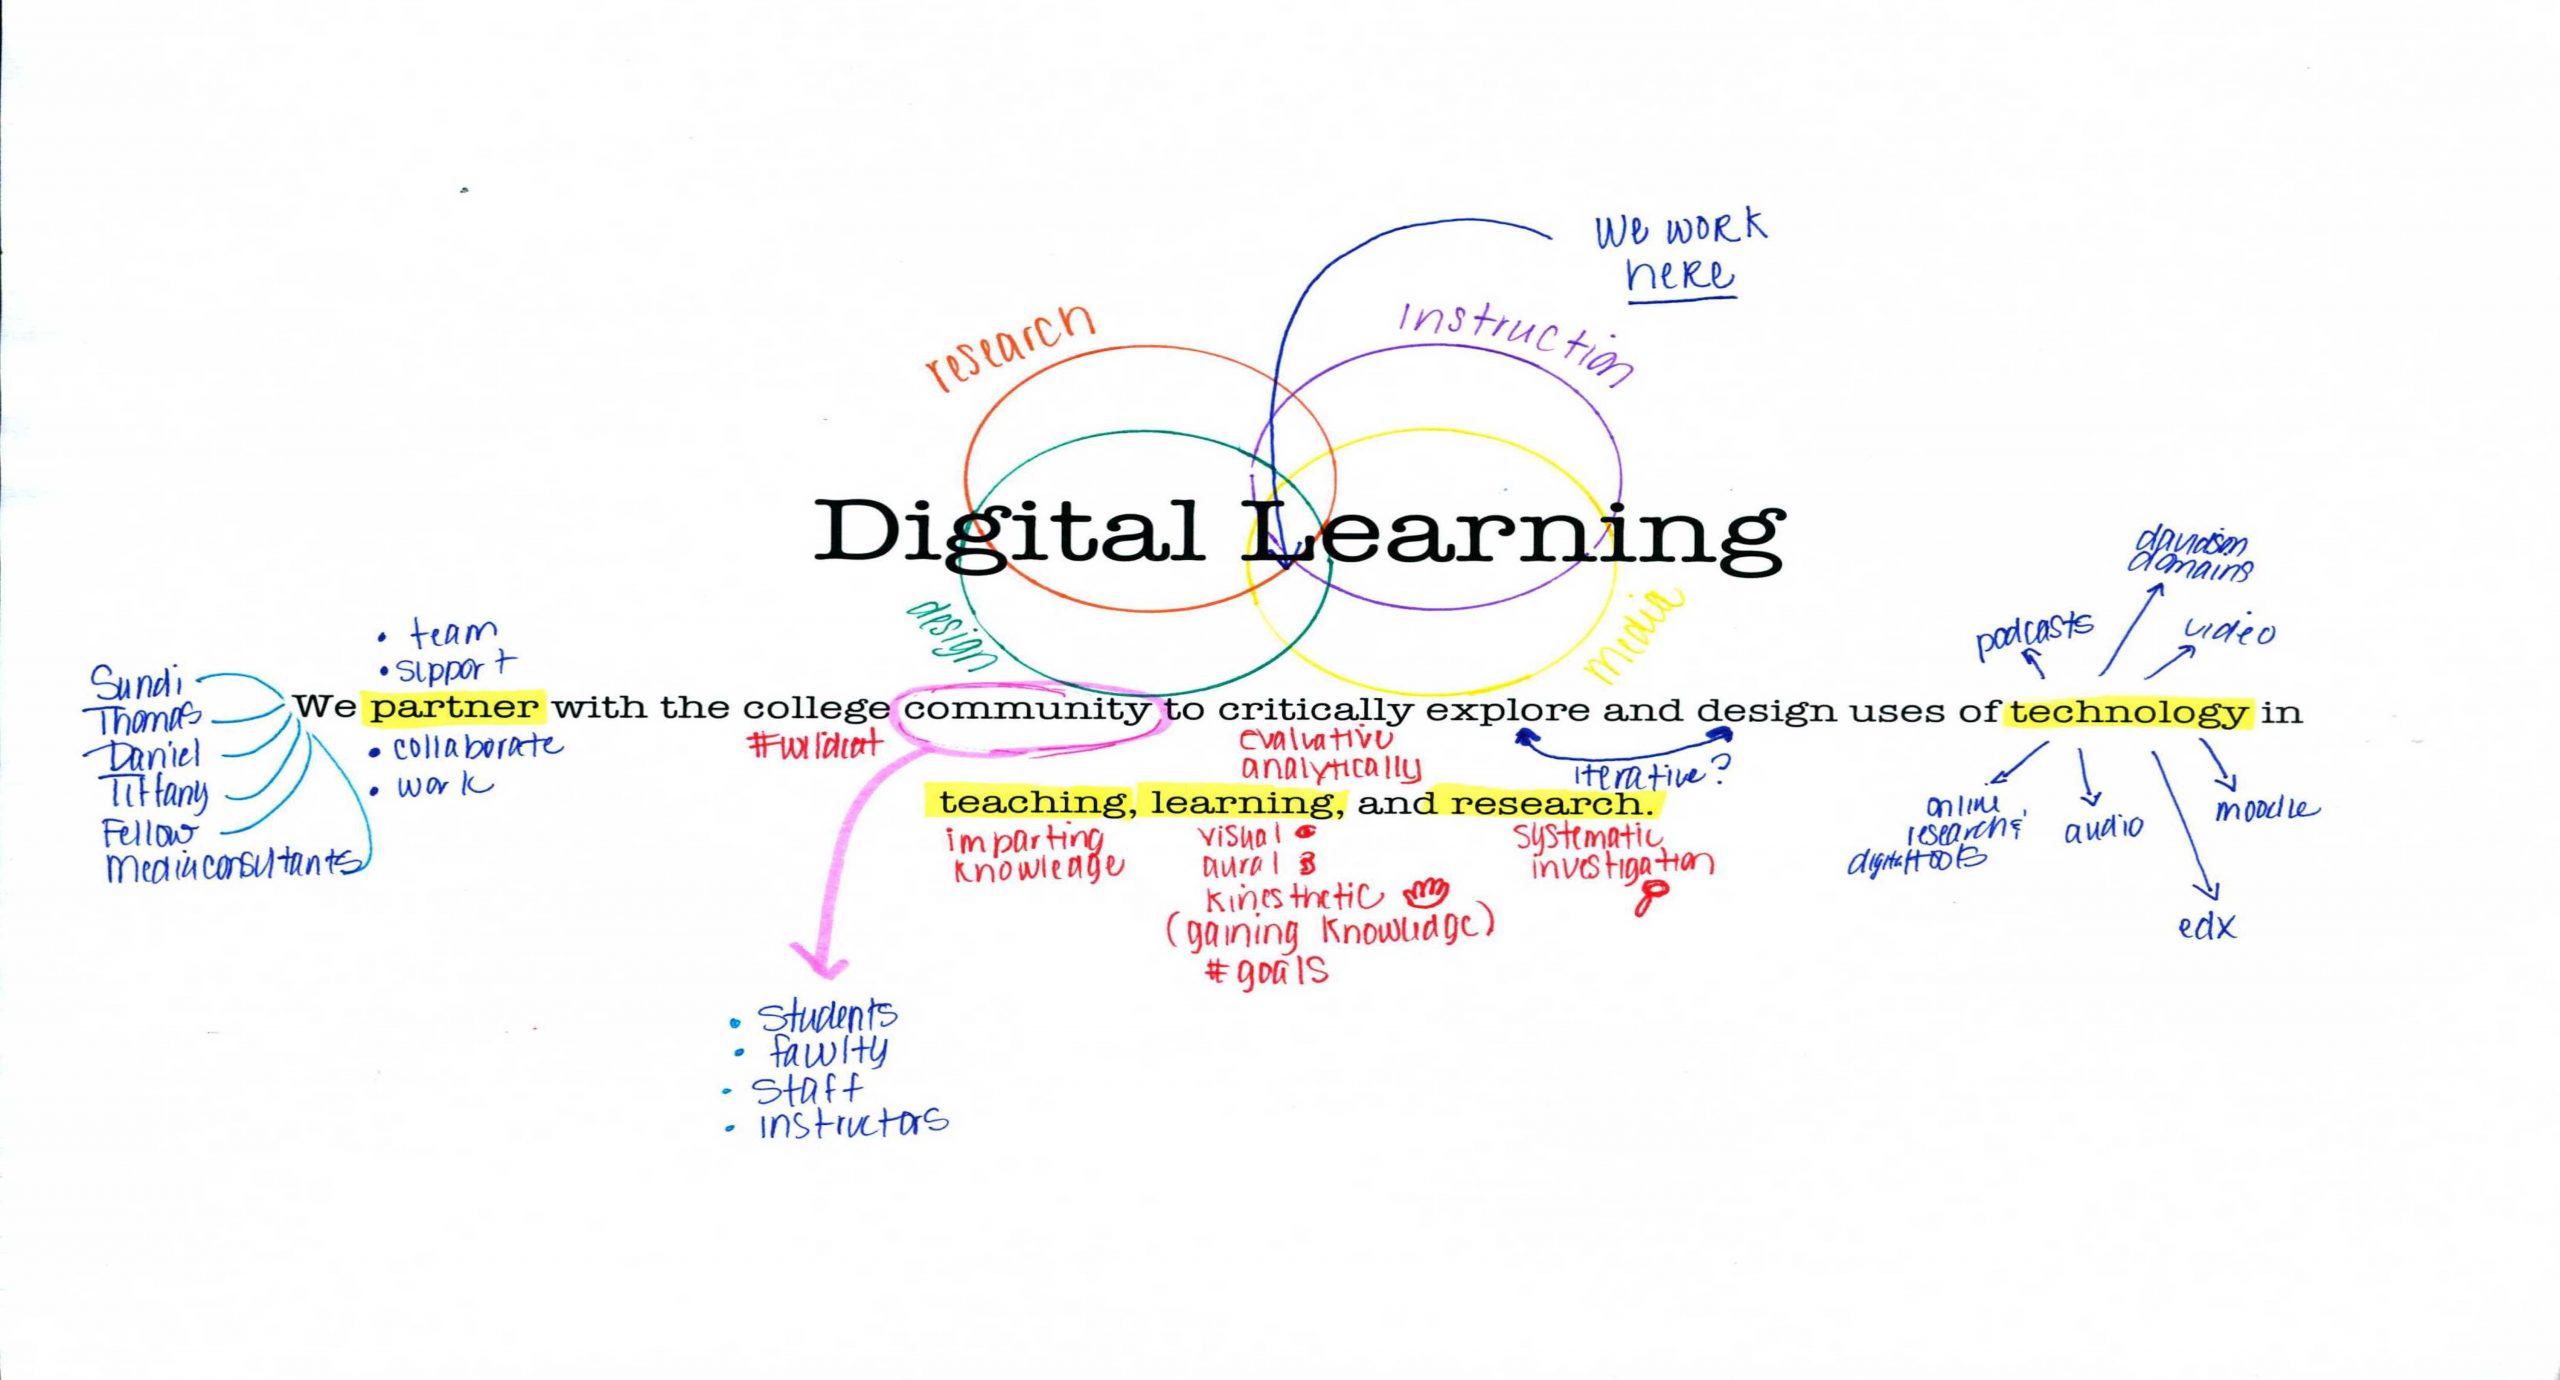 Davidson College Digital Learning